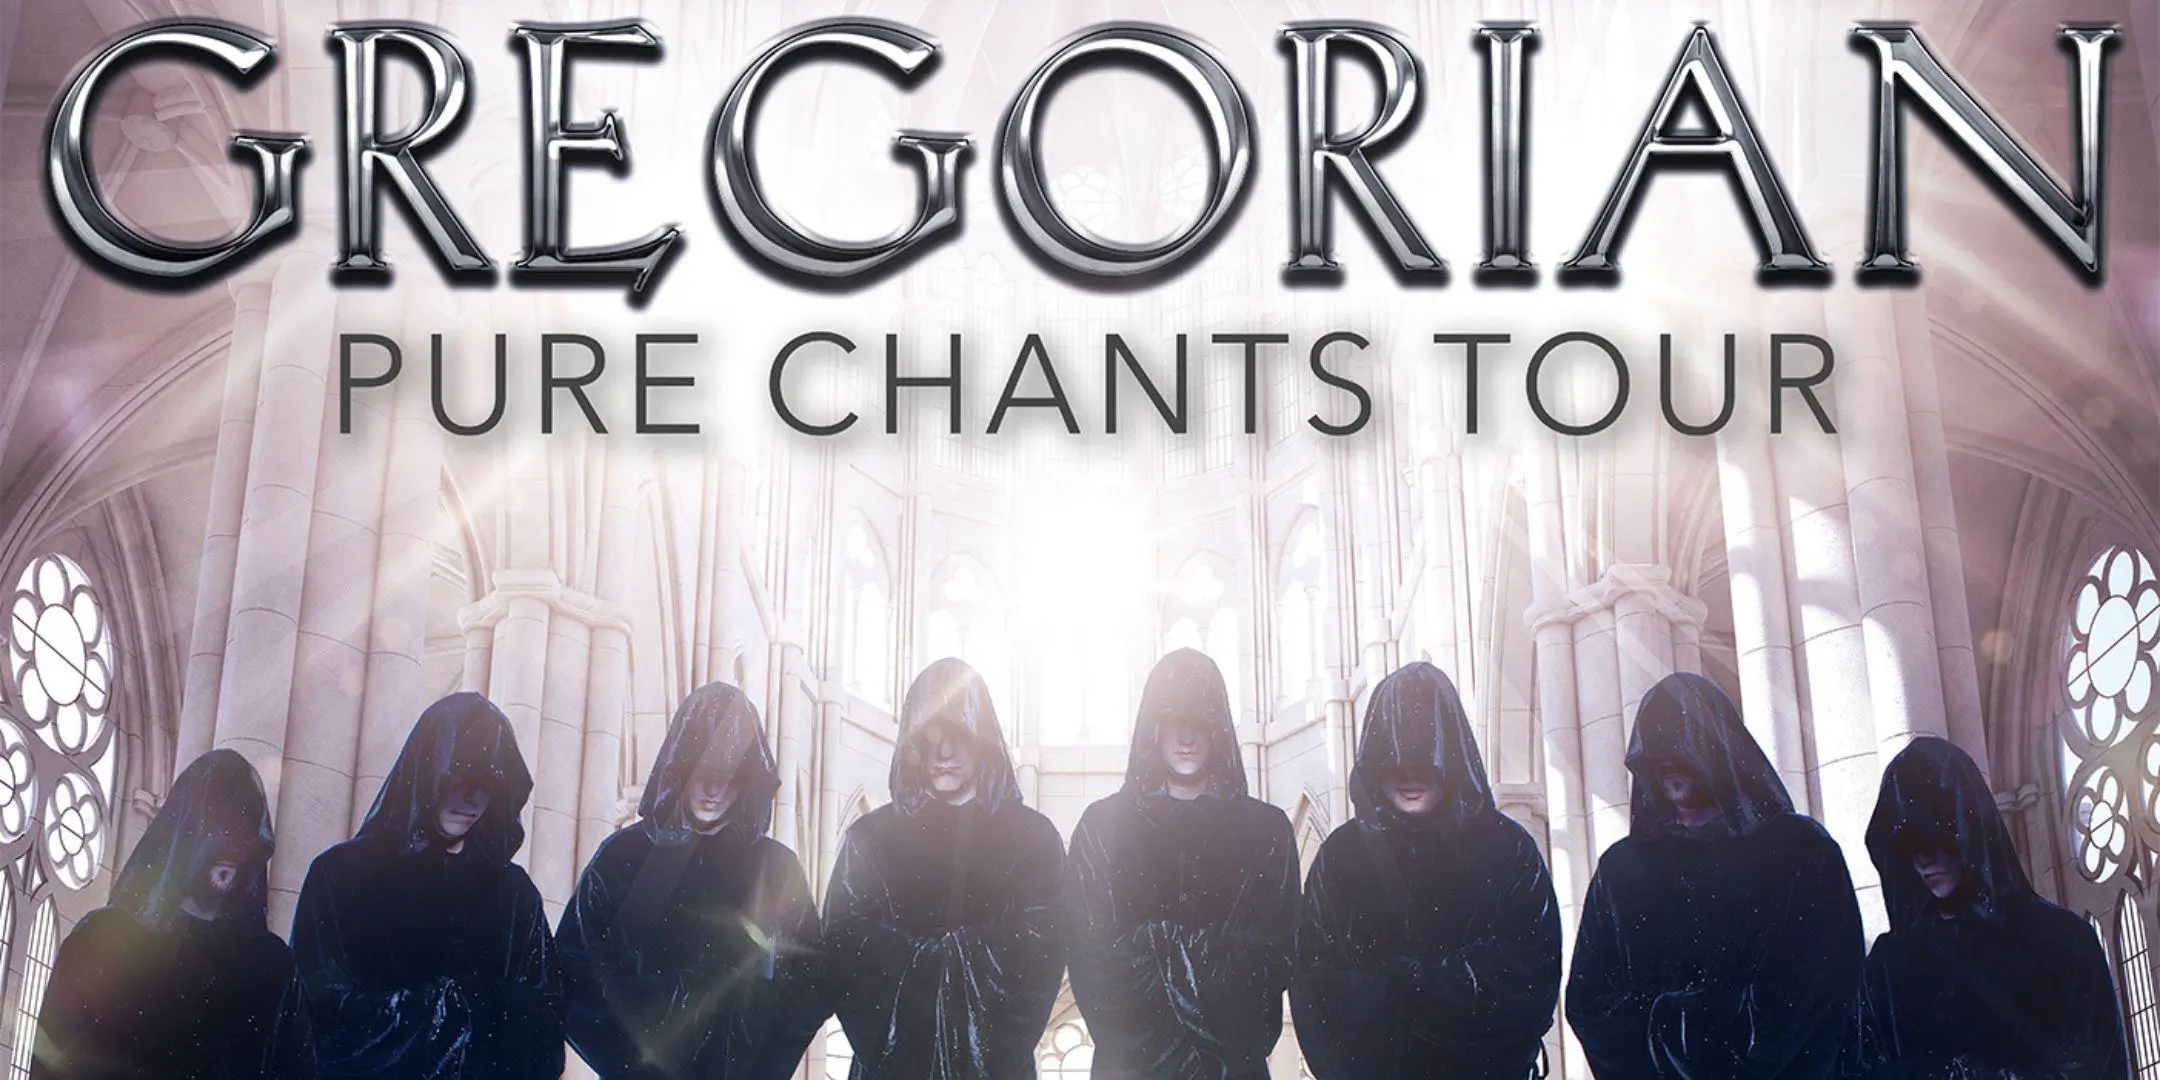 Gregorian: Pure Chants in Concert